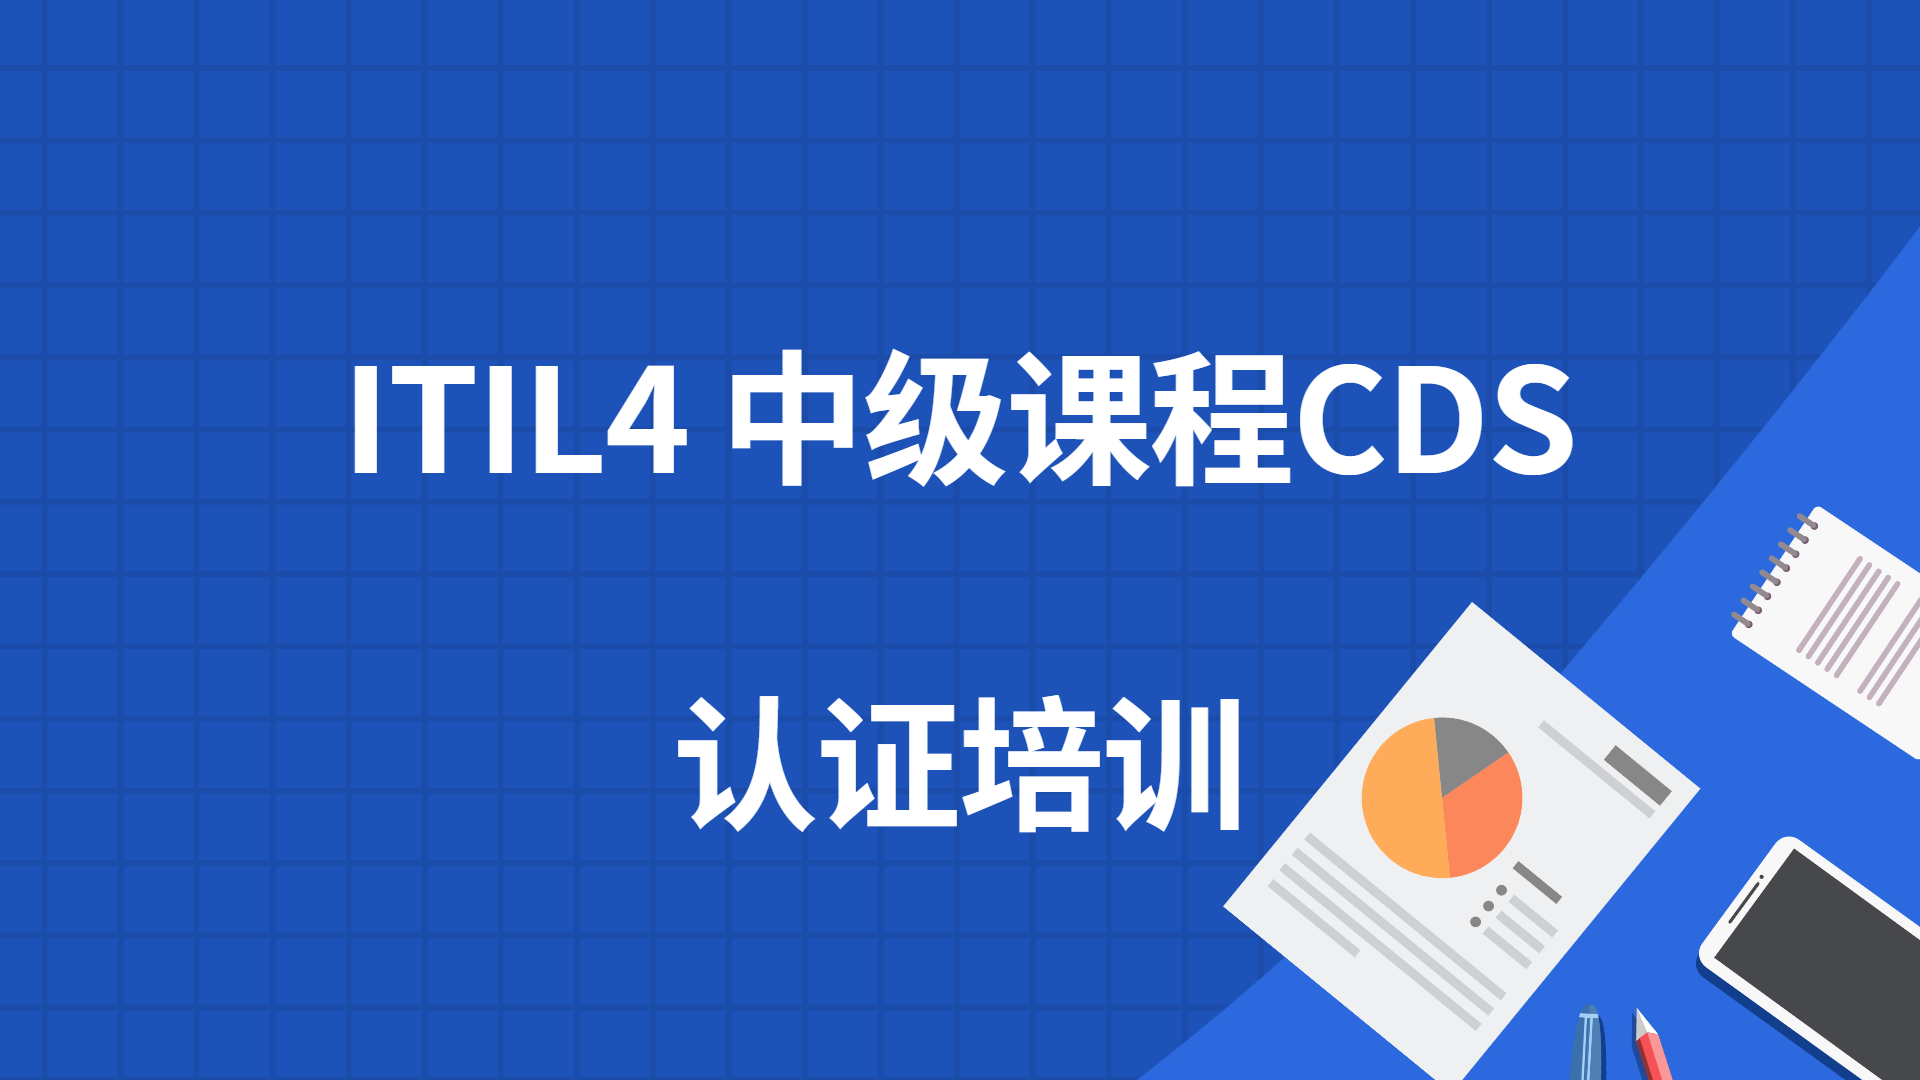 ITIL4中级课程CDS培训